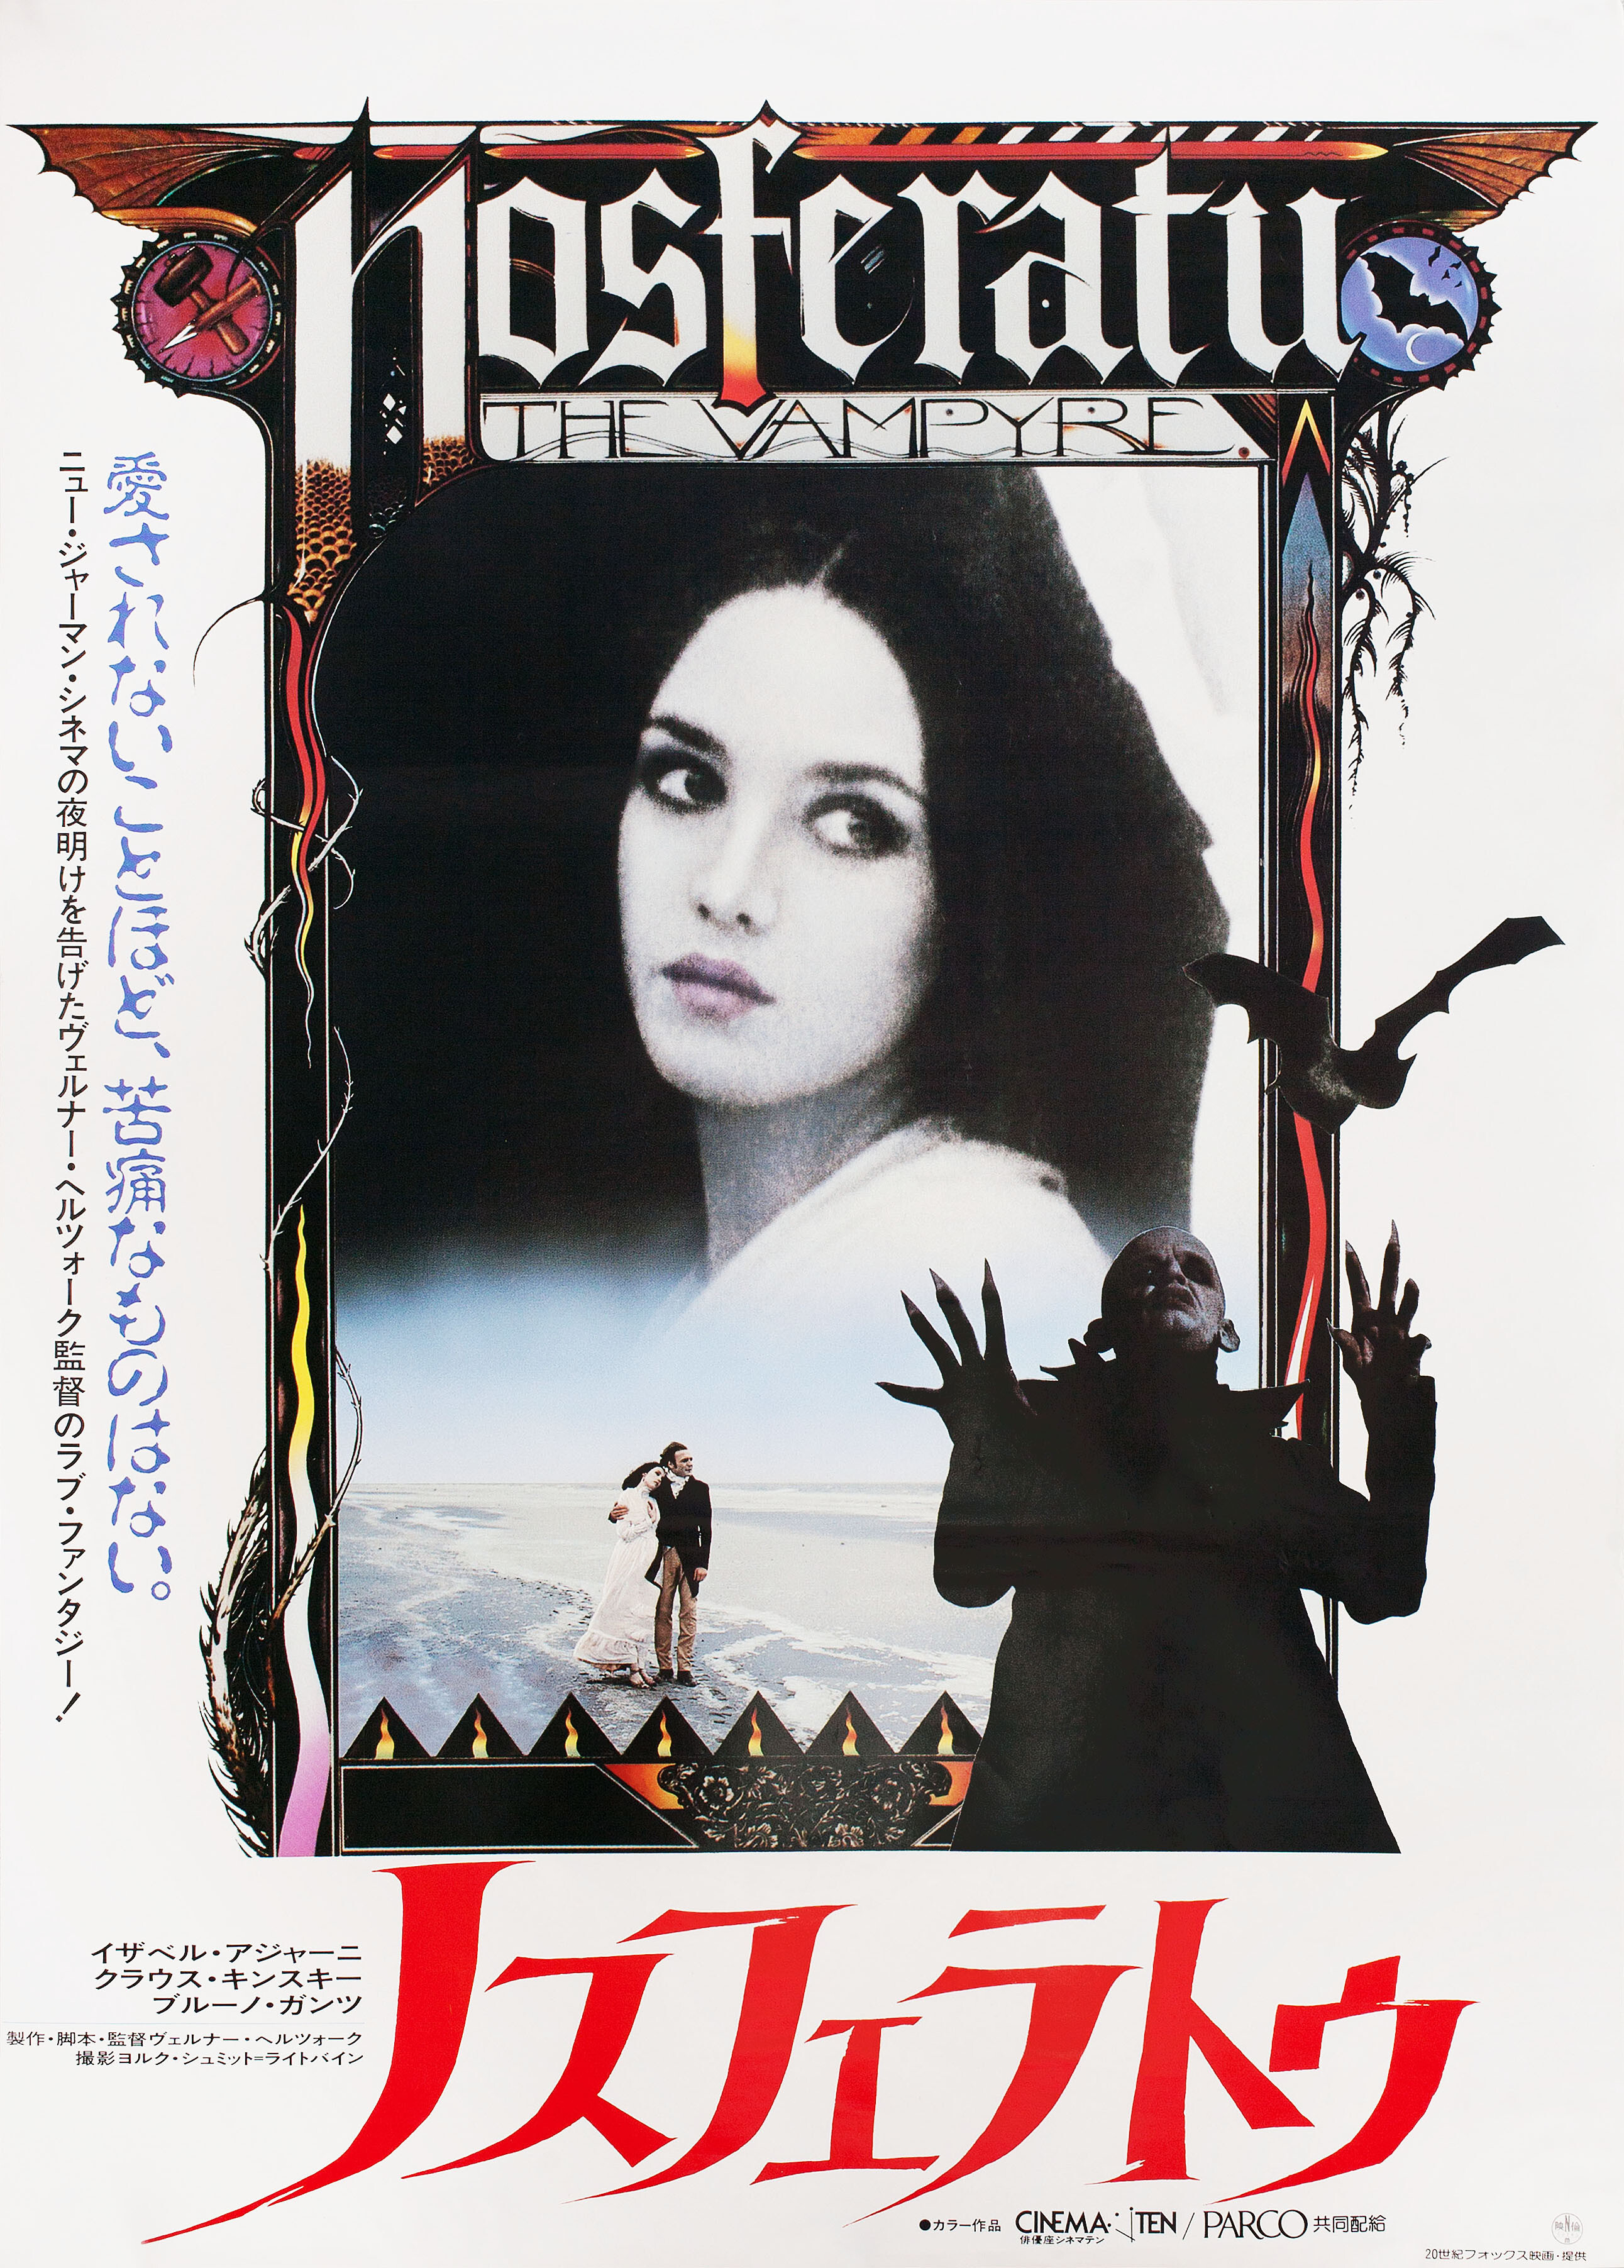 Носферату: Призрак ночи (Nosferatu the Vampyre, 1979), режиссёр Вернер Херцог, японский постер к фильму (ужасы, 1985)